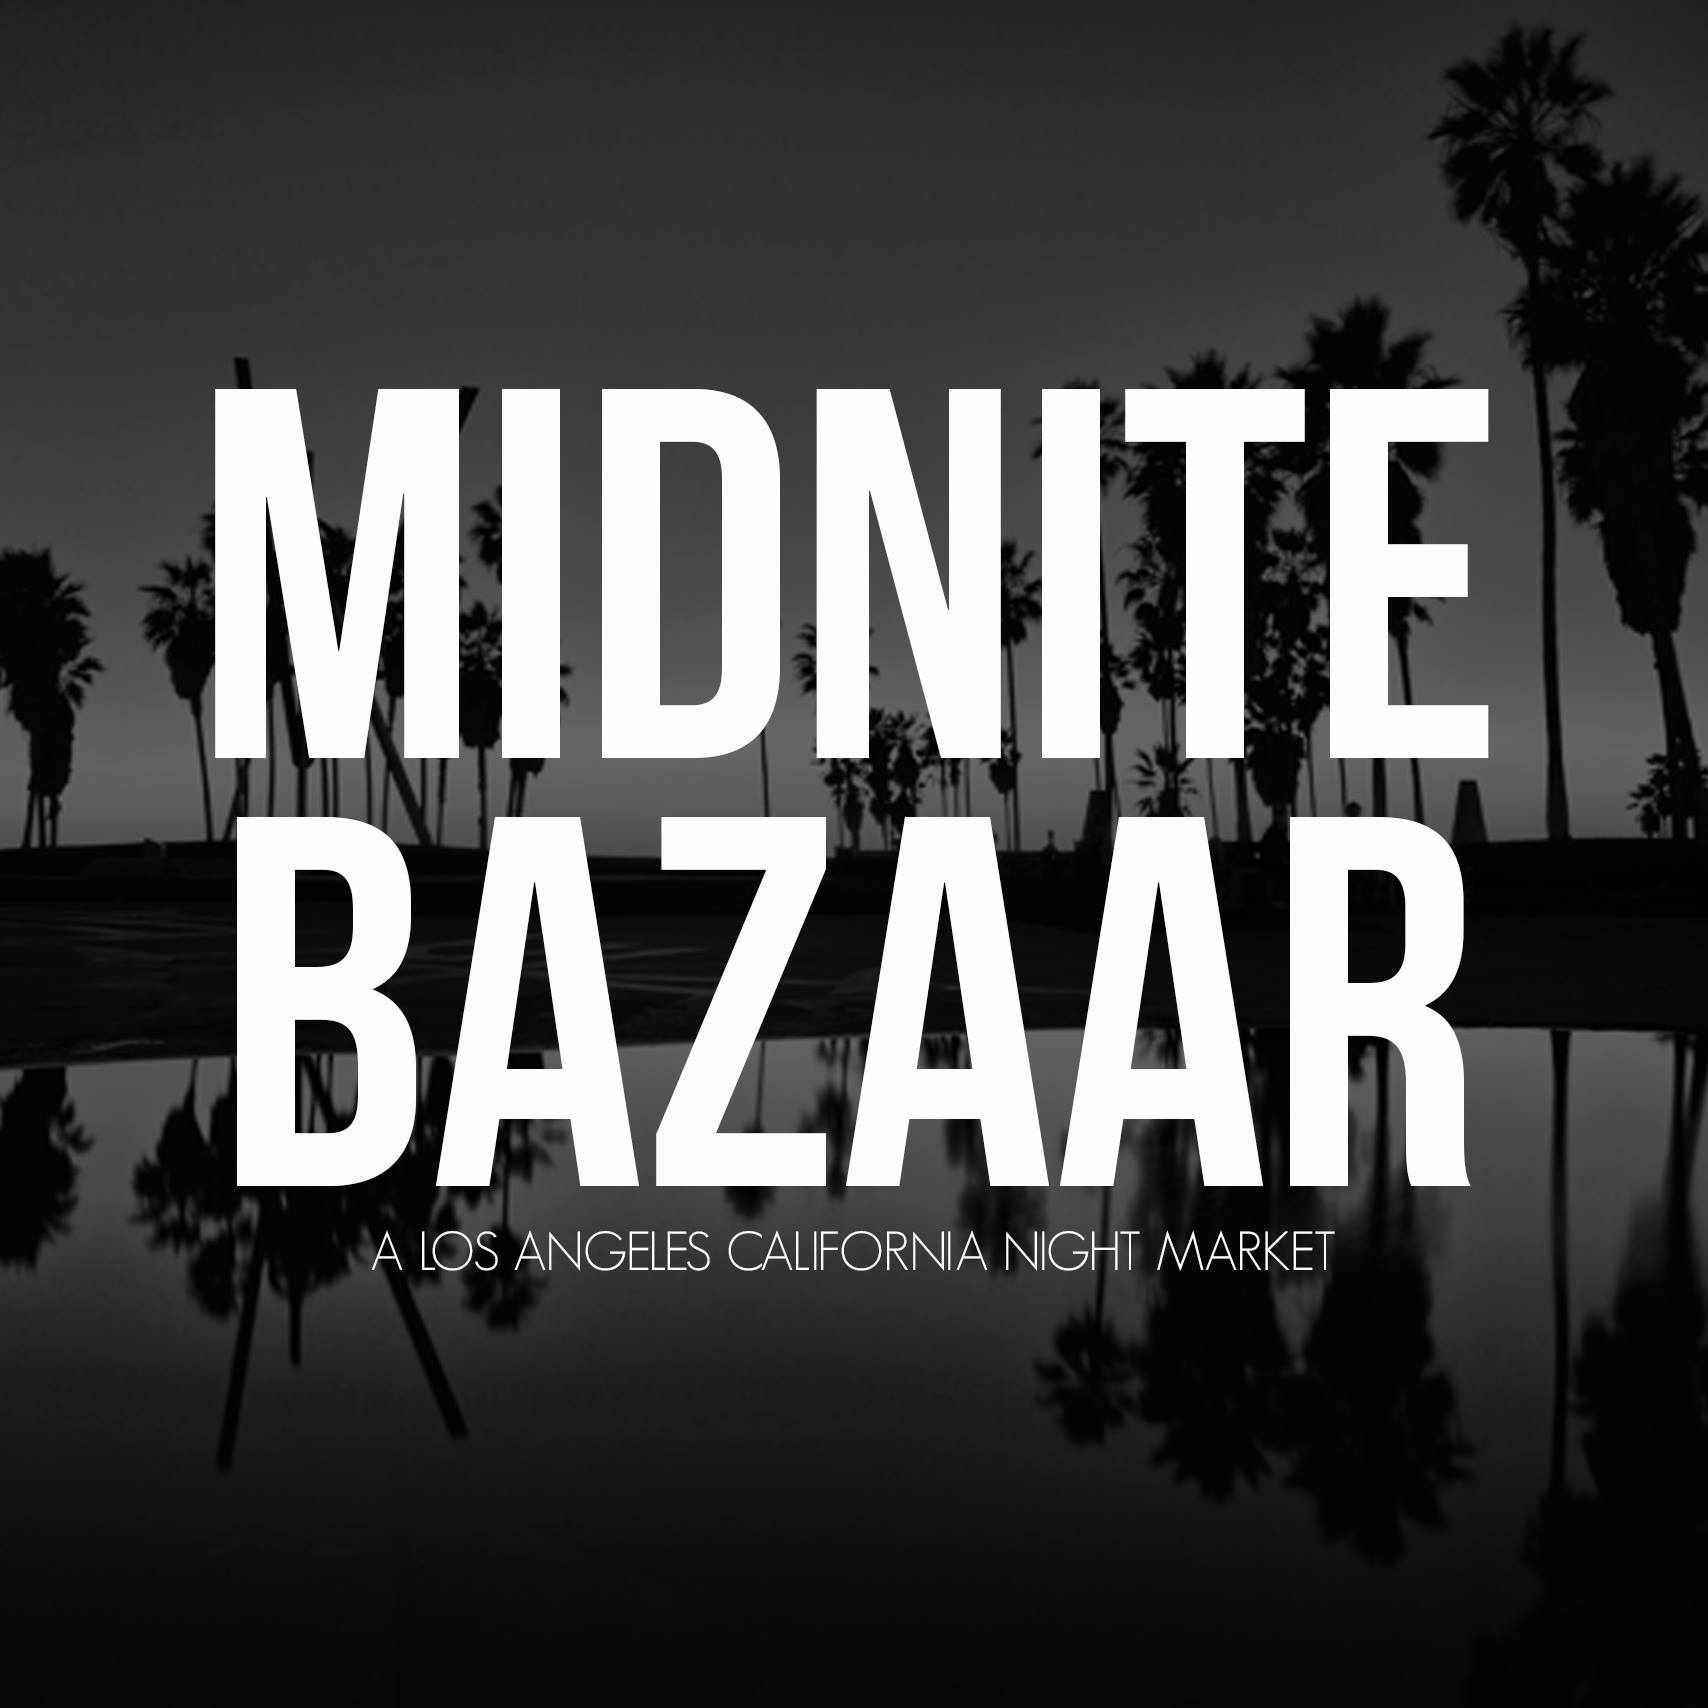 The Midnite Bazaar